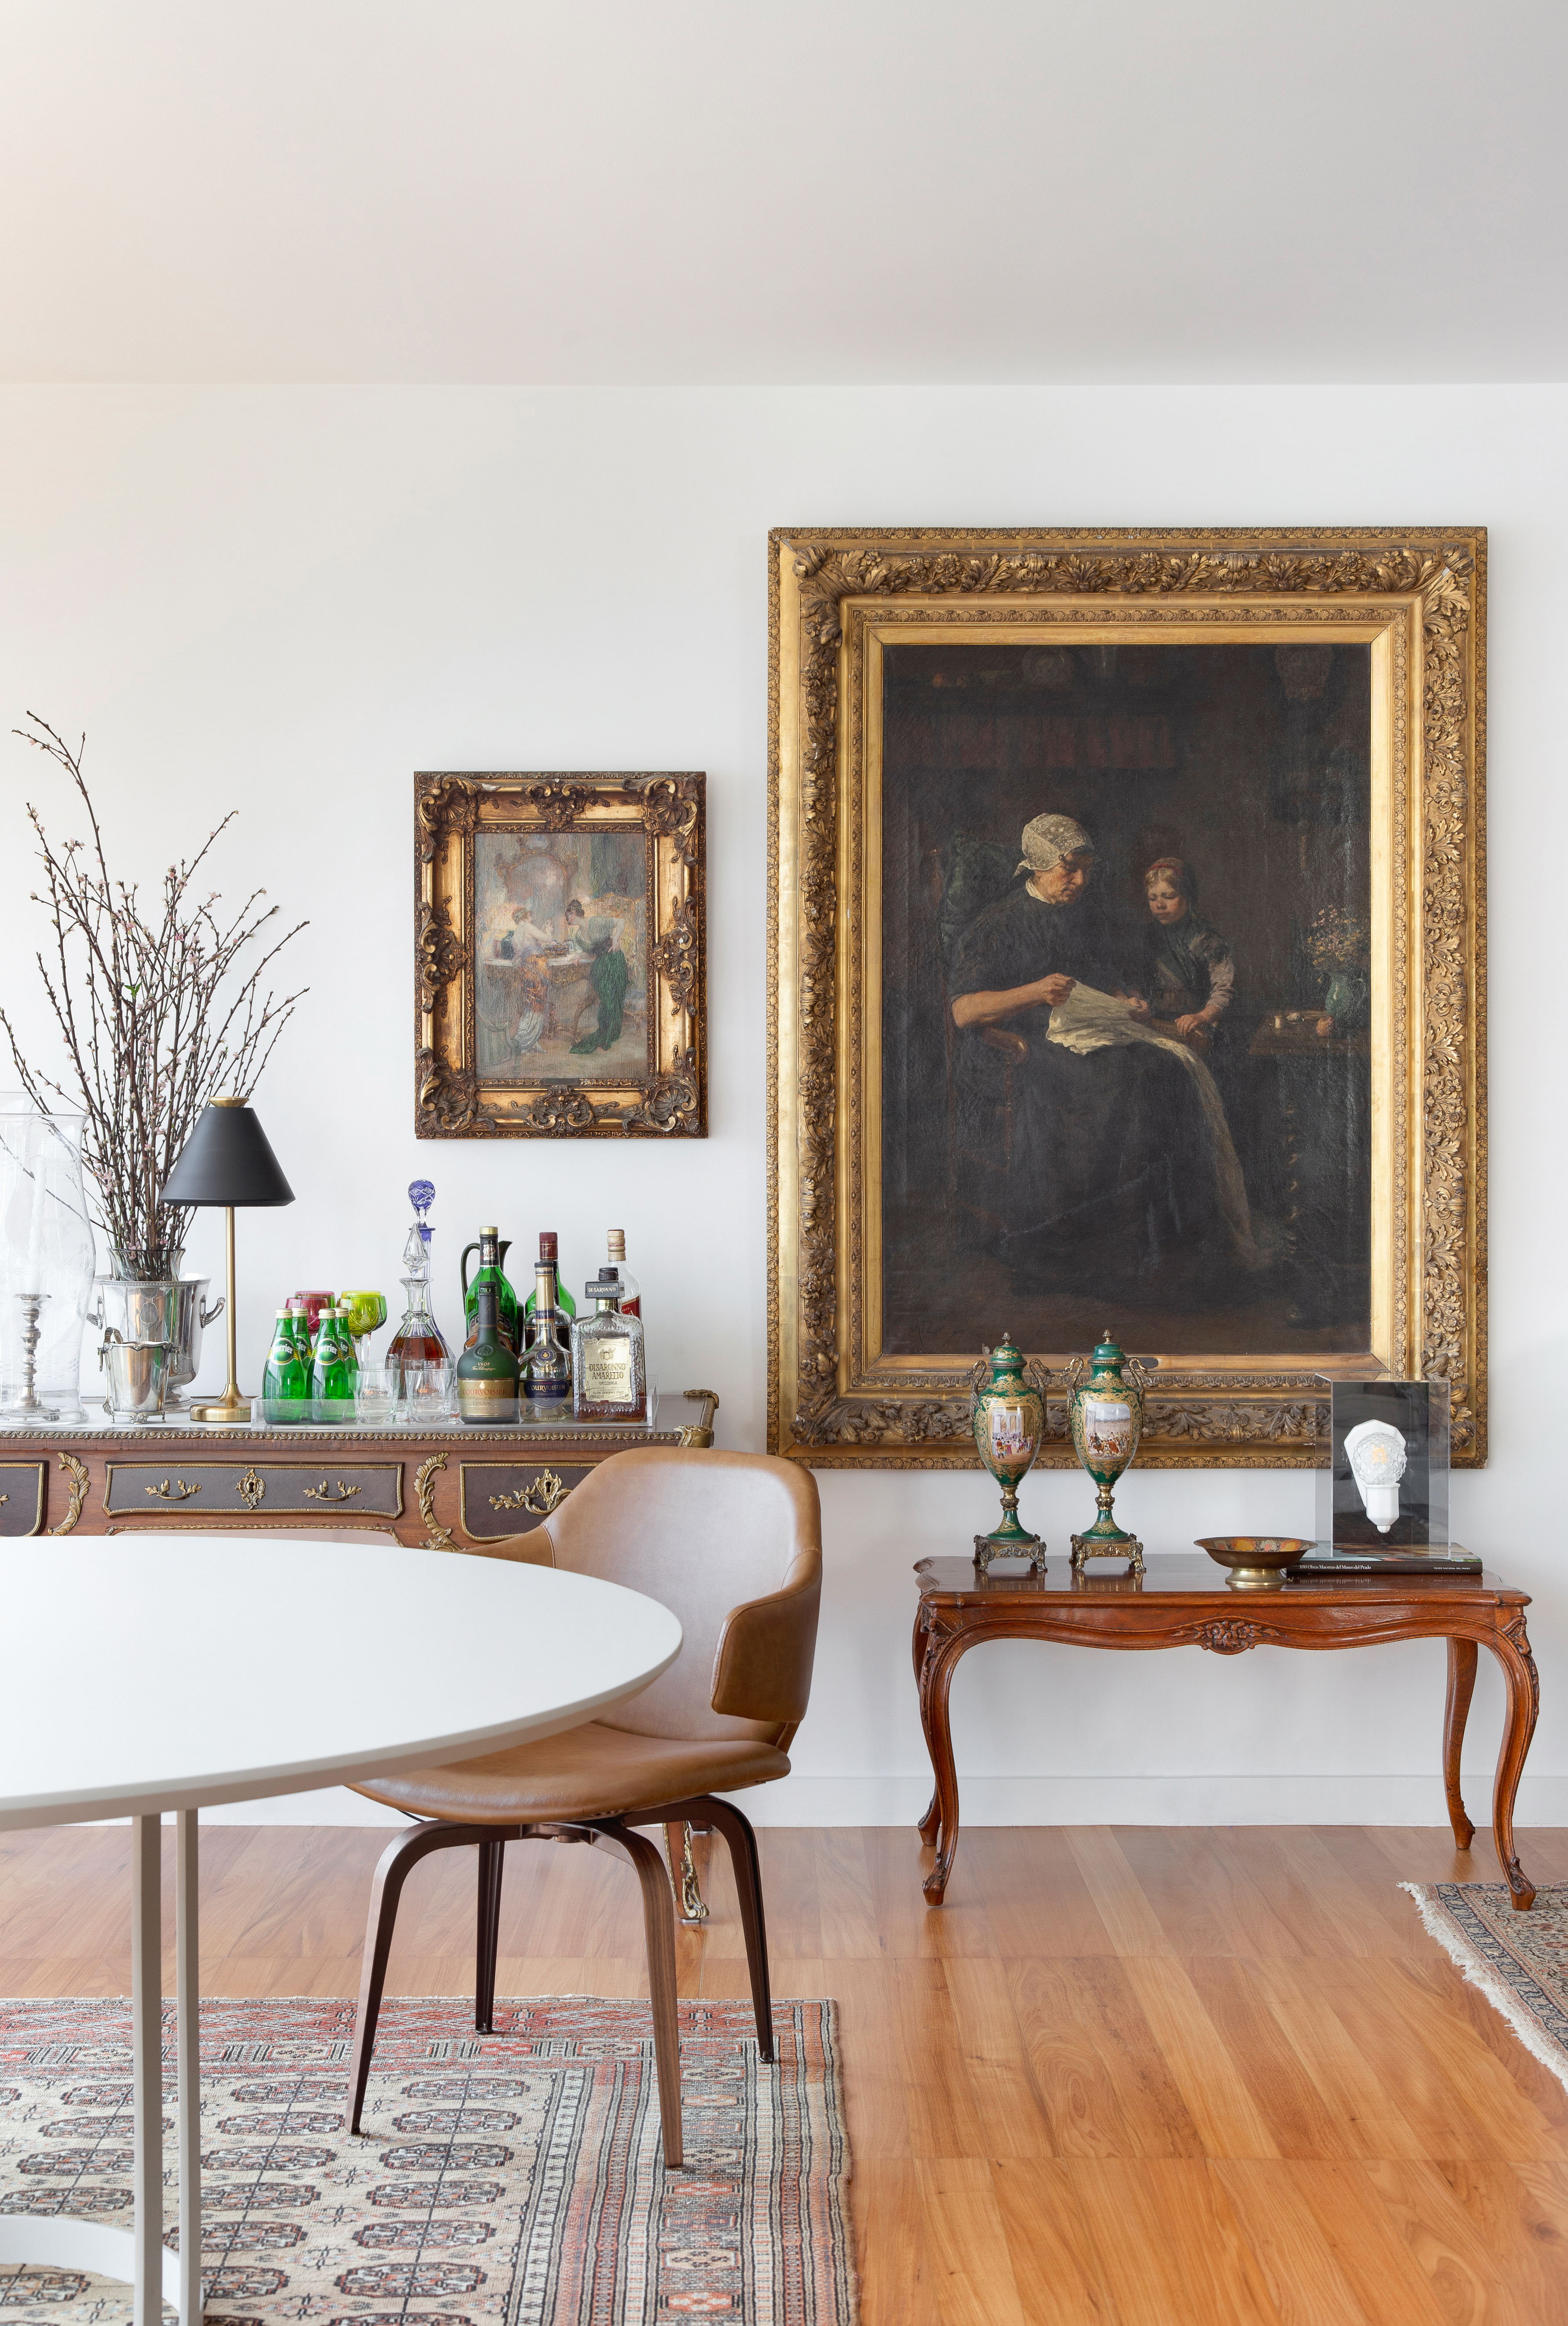 Projeto de Ricardo Melo e Rodrigo Passos. Na foto, sala de jantar integrada com mesa vintage e quadro.